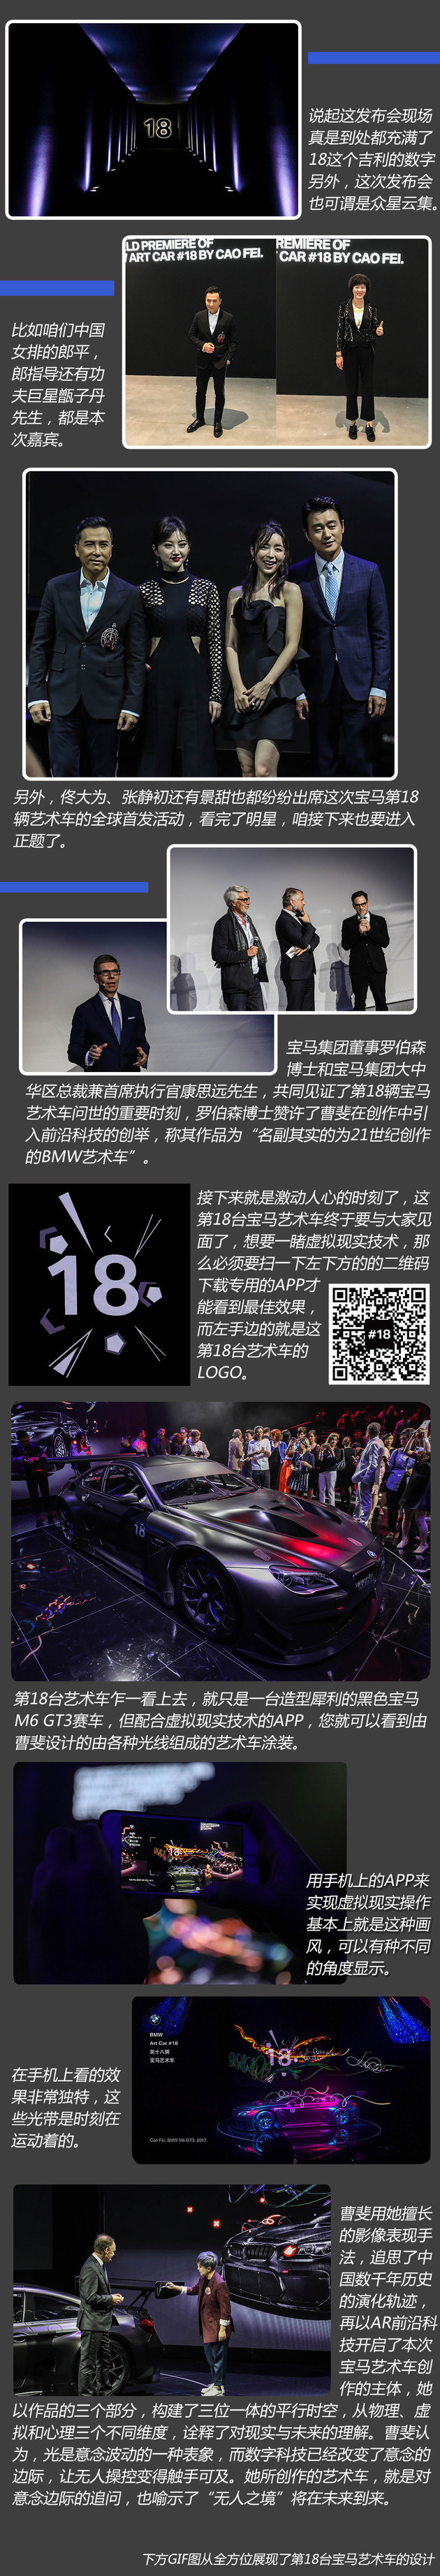 甄子丹等助阵 宝马第18台艺术车在华首发